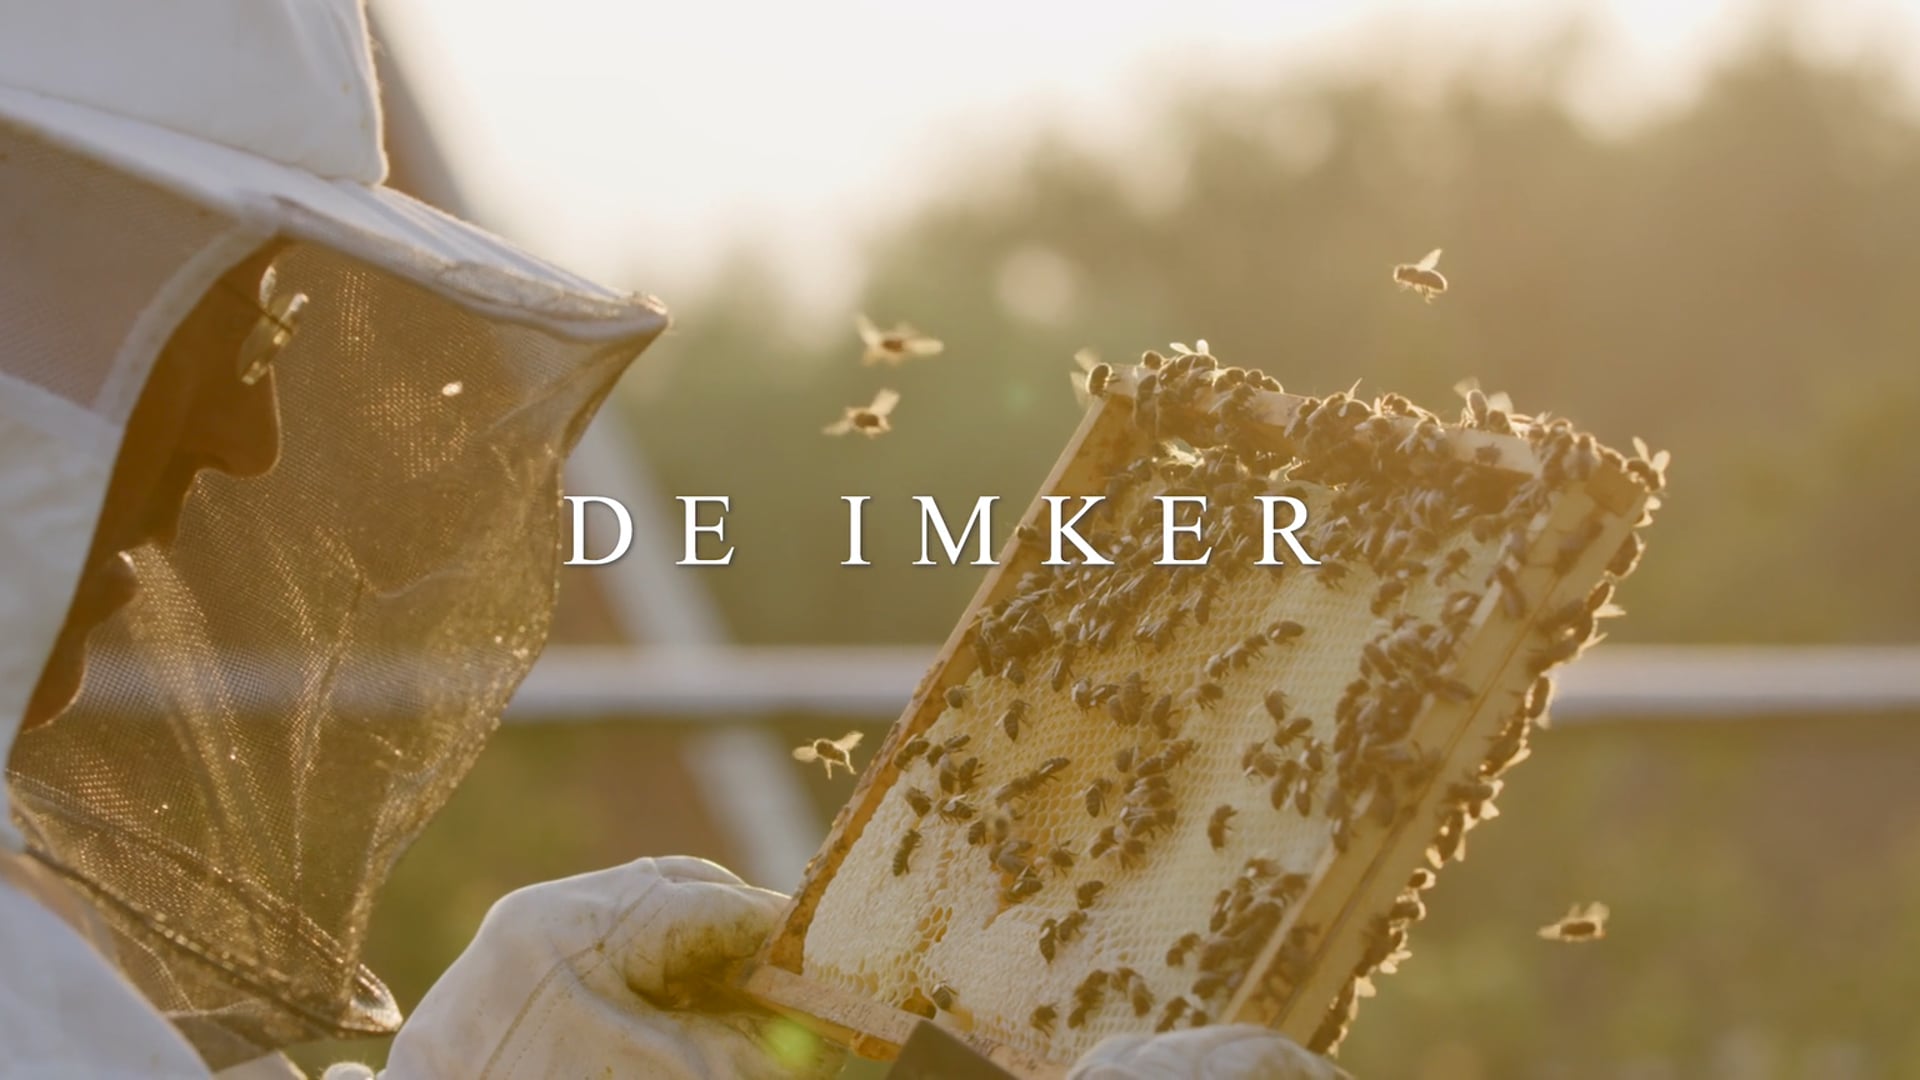 The Beekeeper - De Imker van De Nesse